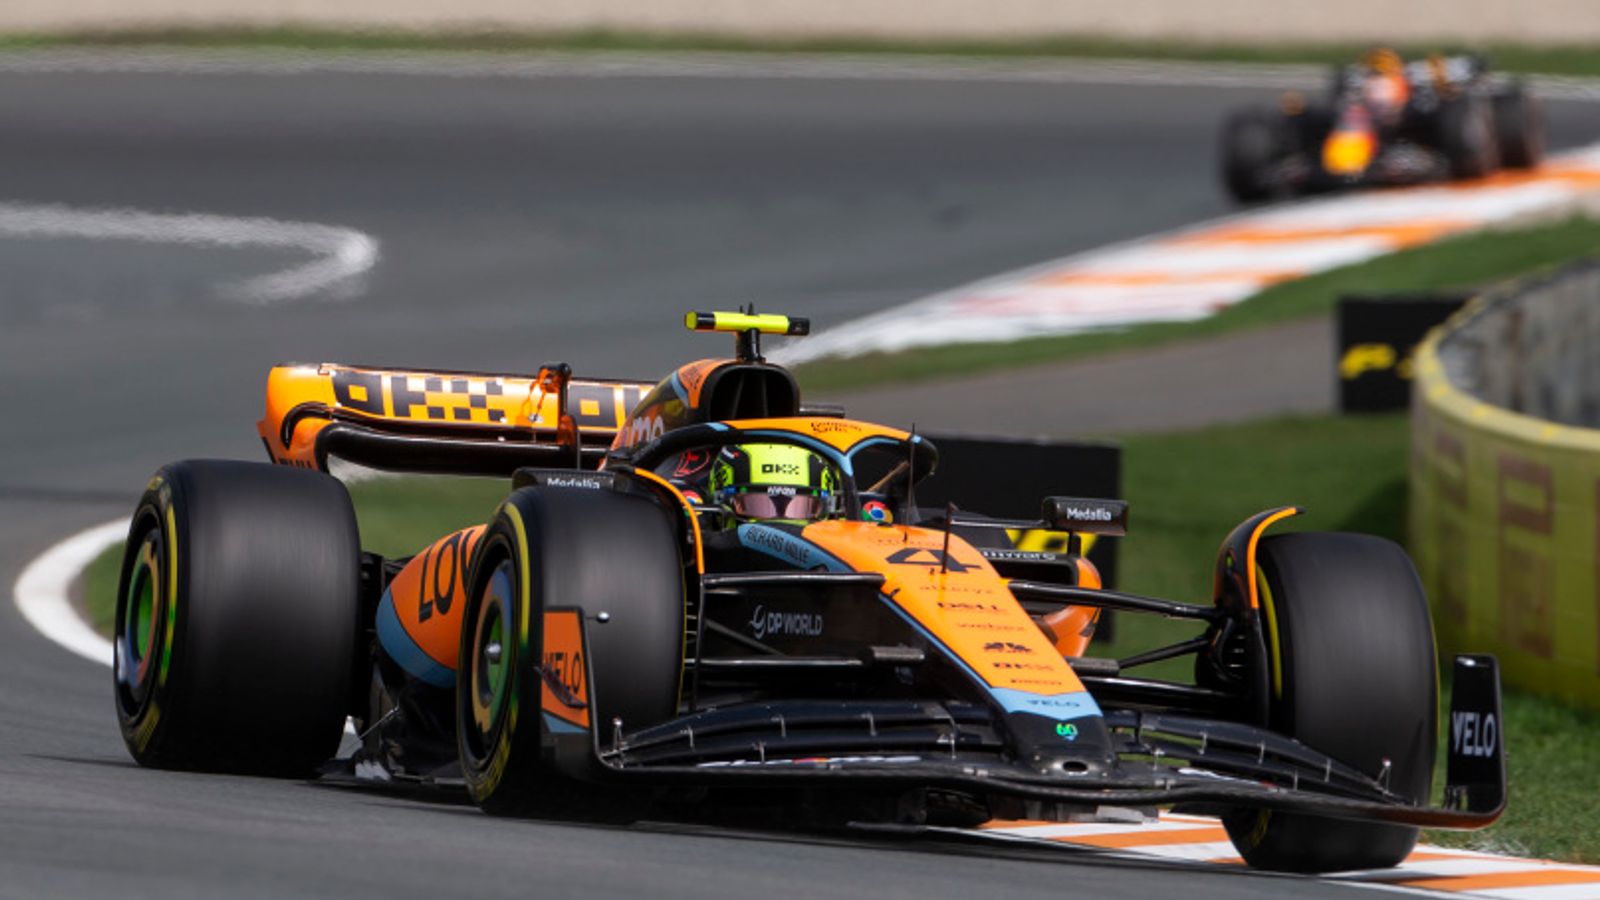 Nederlandse Grand Prix: Lando Norris haalt Max Verstappen in terwijl Daniel Ricciardo na het ongeval voor tests naar het ziekenhuis wordt gebracht |  Formule 1 nieuws